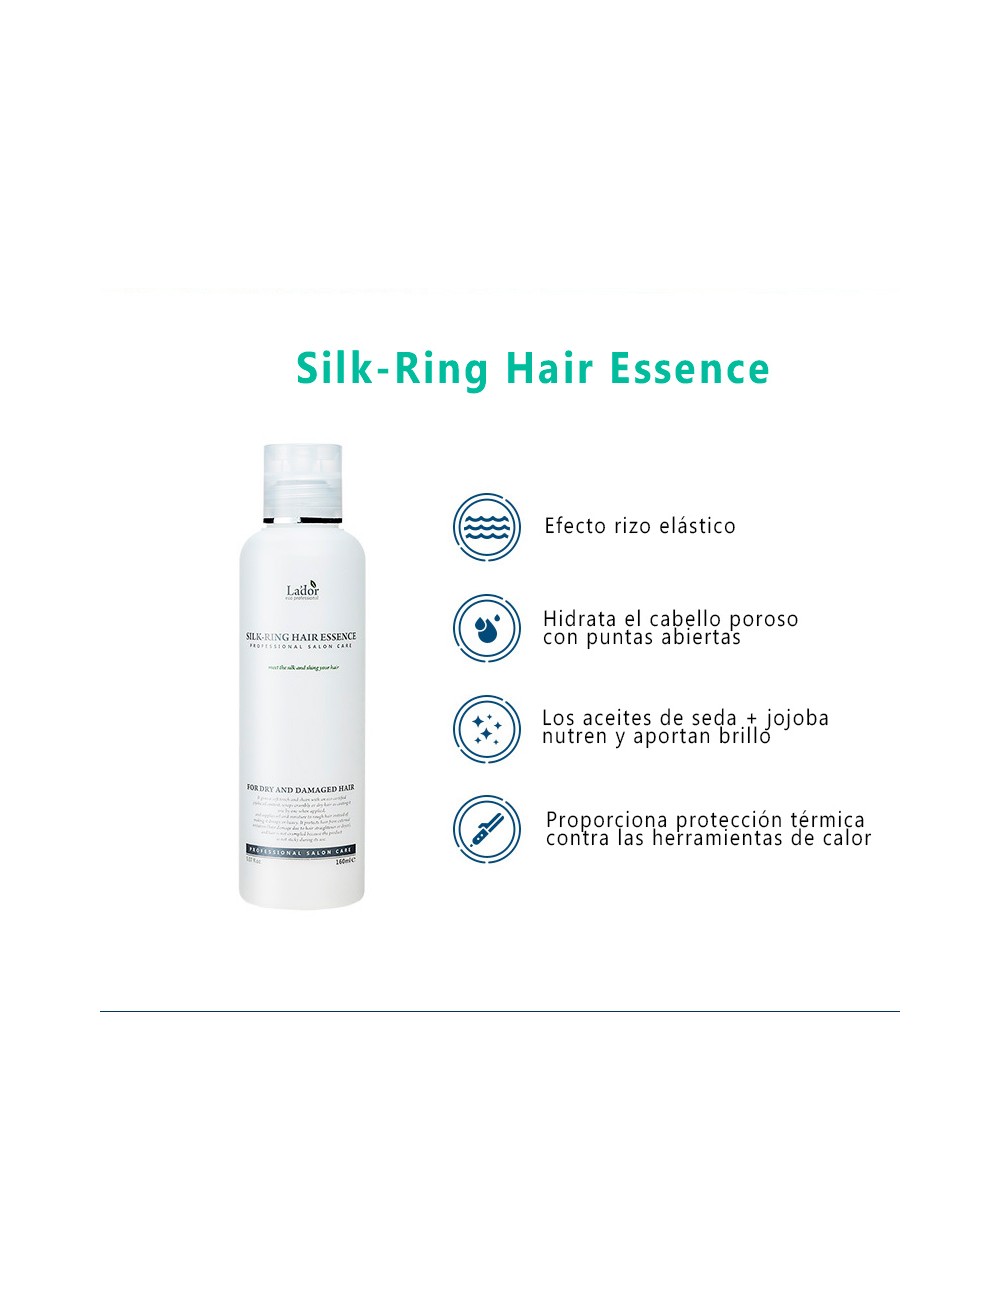 Cosmética Coreana al mejor precio: La'dor Silk-Ring Hair Essence - Pelo y Dañado de Lador Eco Professional en Skin Thinks - 